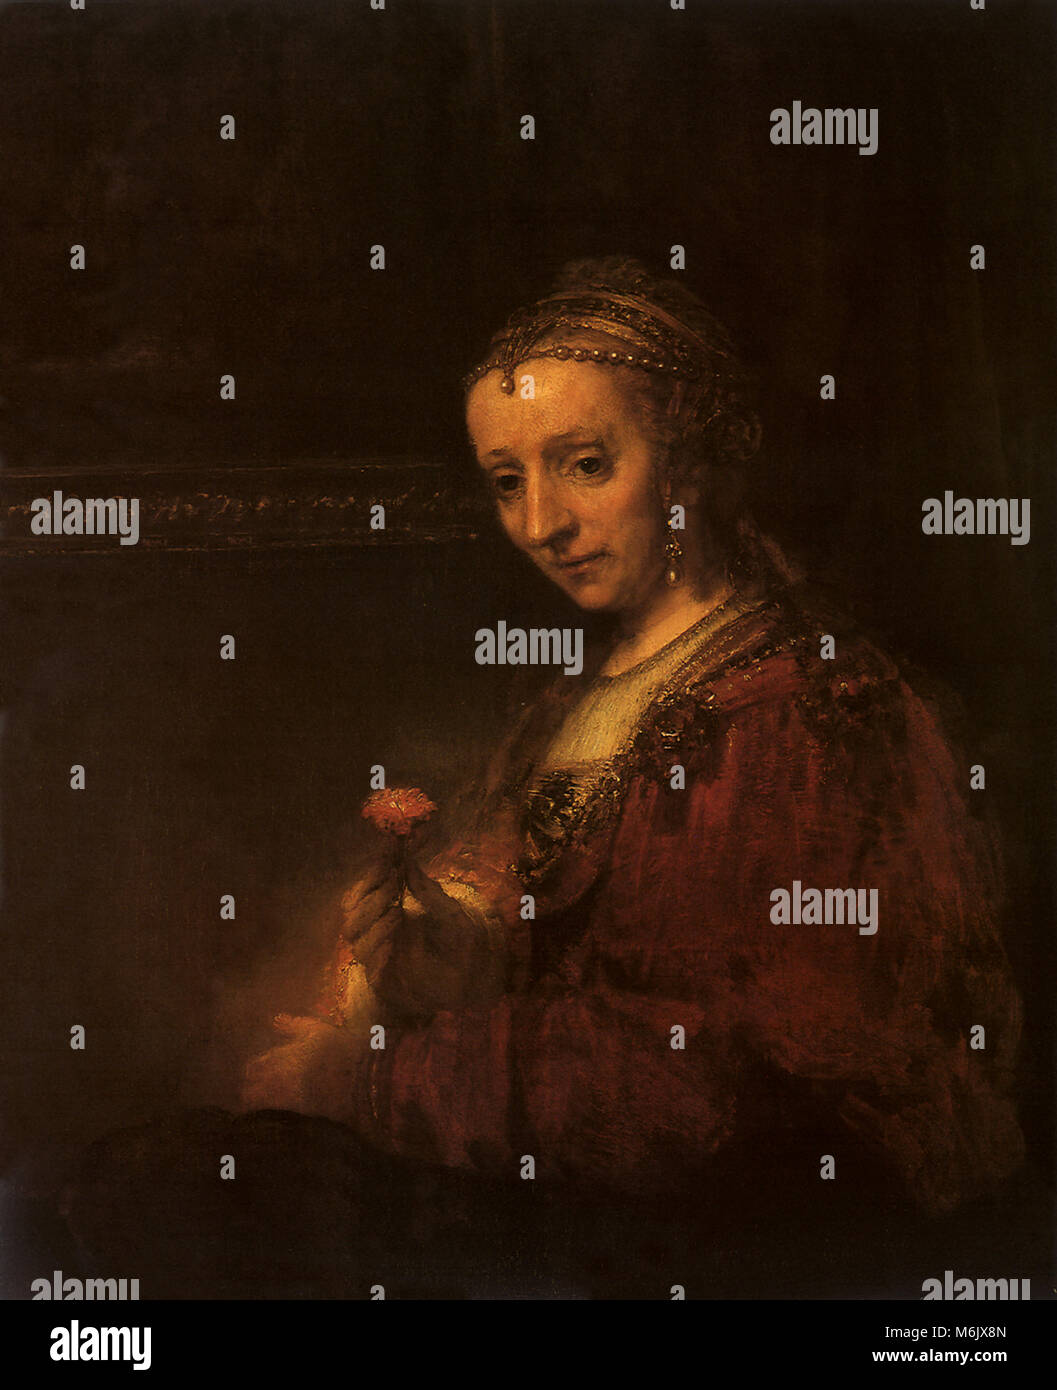 Eine Frau mit einer roten Nelke in ihrer rechten Hand, Rembrandt, Harmensz van Rijn, 1665. Stockfoto